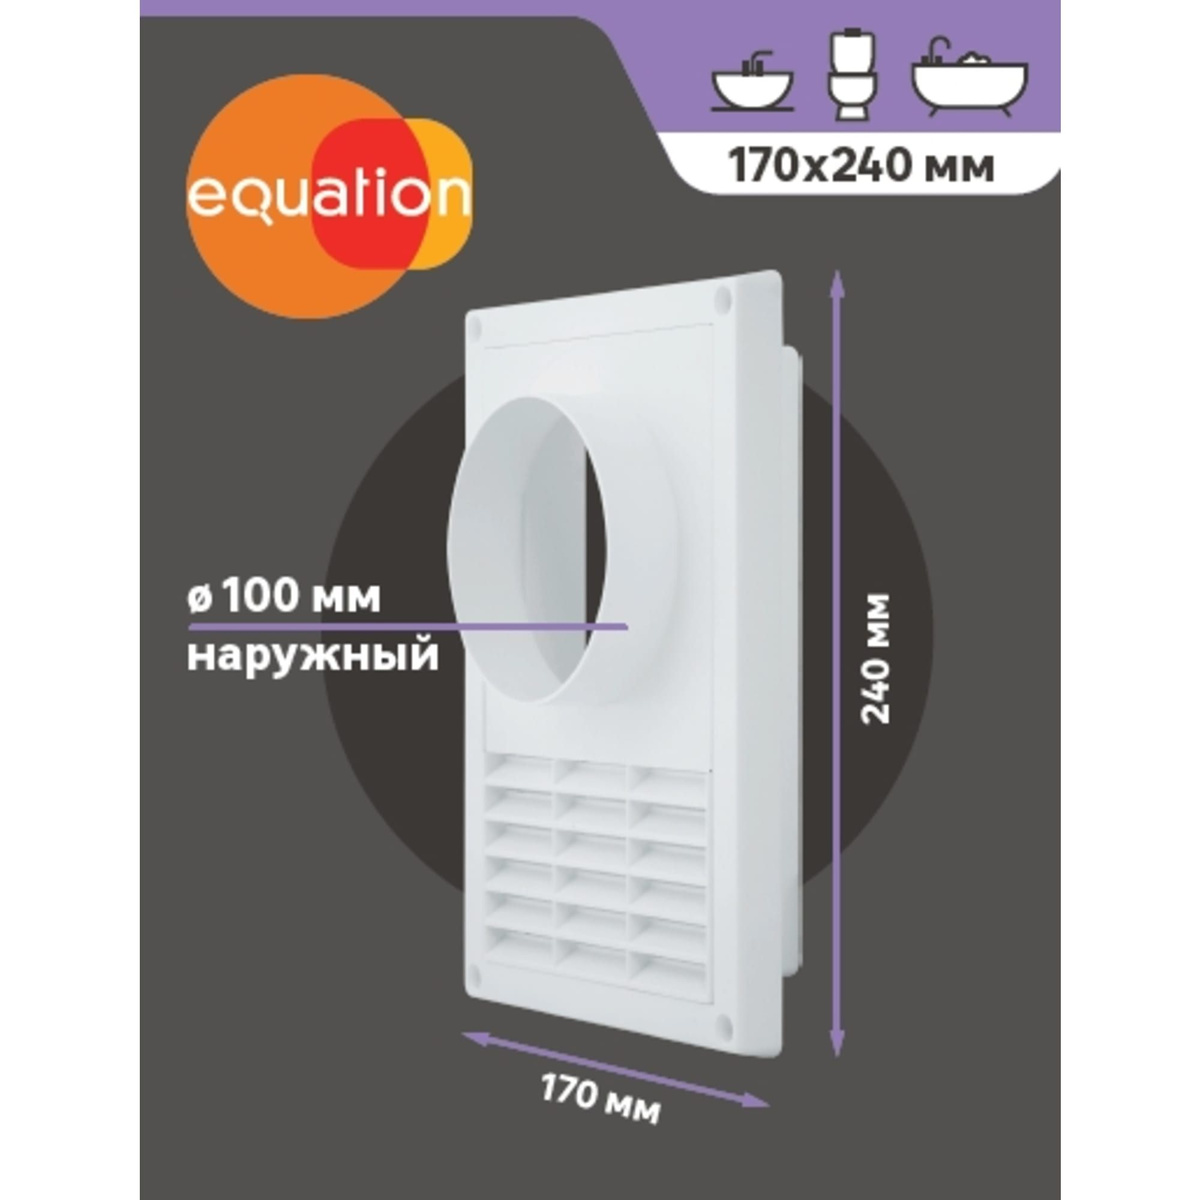 Решётка вентиляционная Equation D100 мм 170х240 мм полистирол цвет белый - Рис. 3